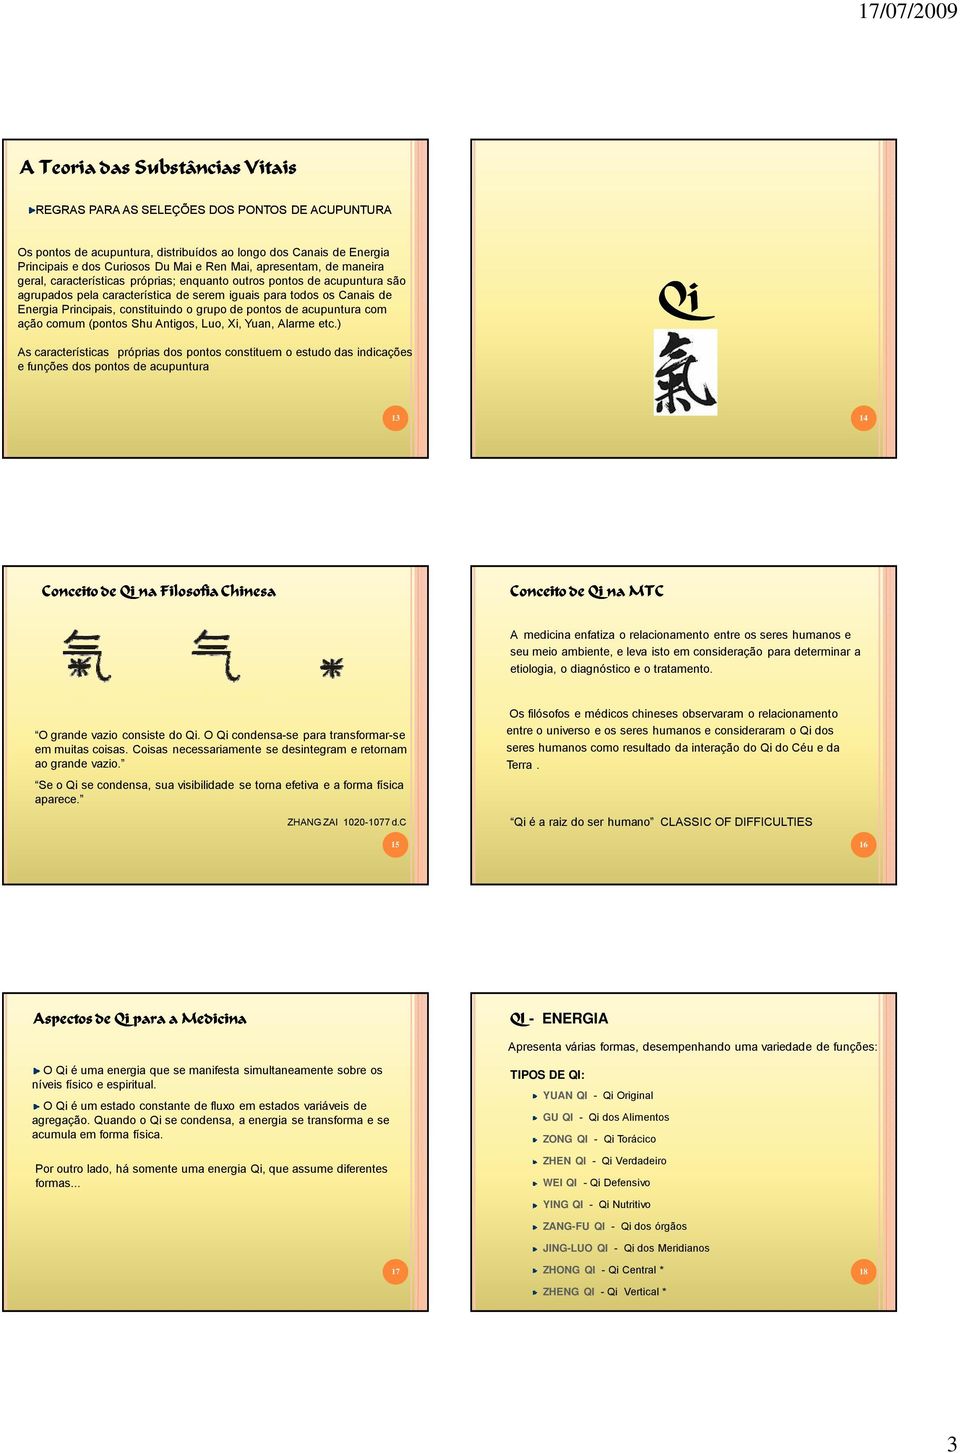 acupuntura com ação comum (pontos Shu Antigos, Luo, Xi, Yuan, Alarme etc.